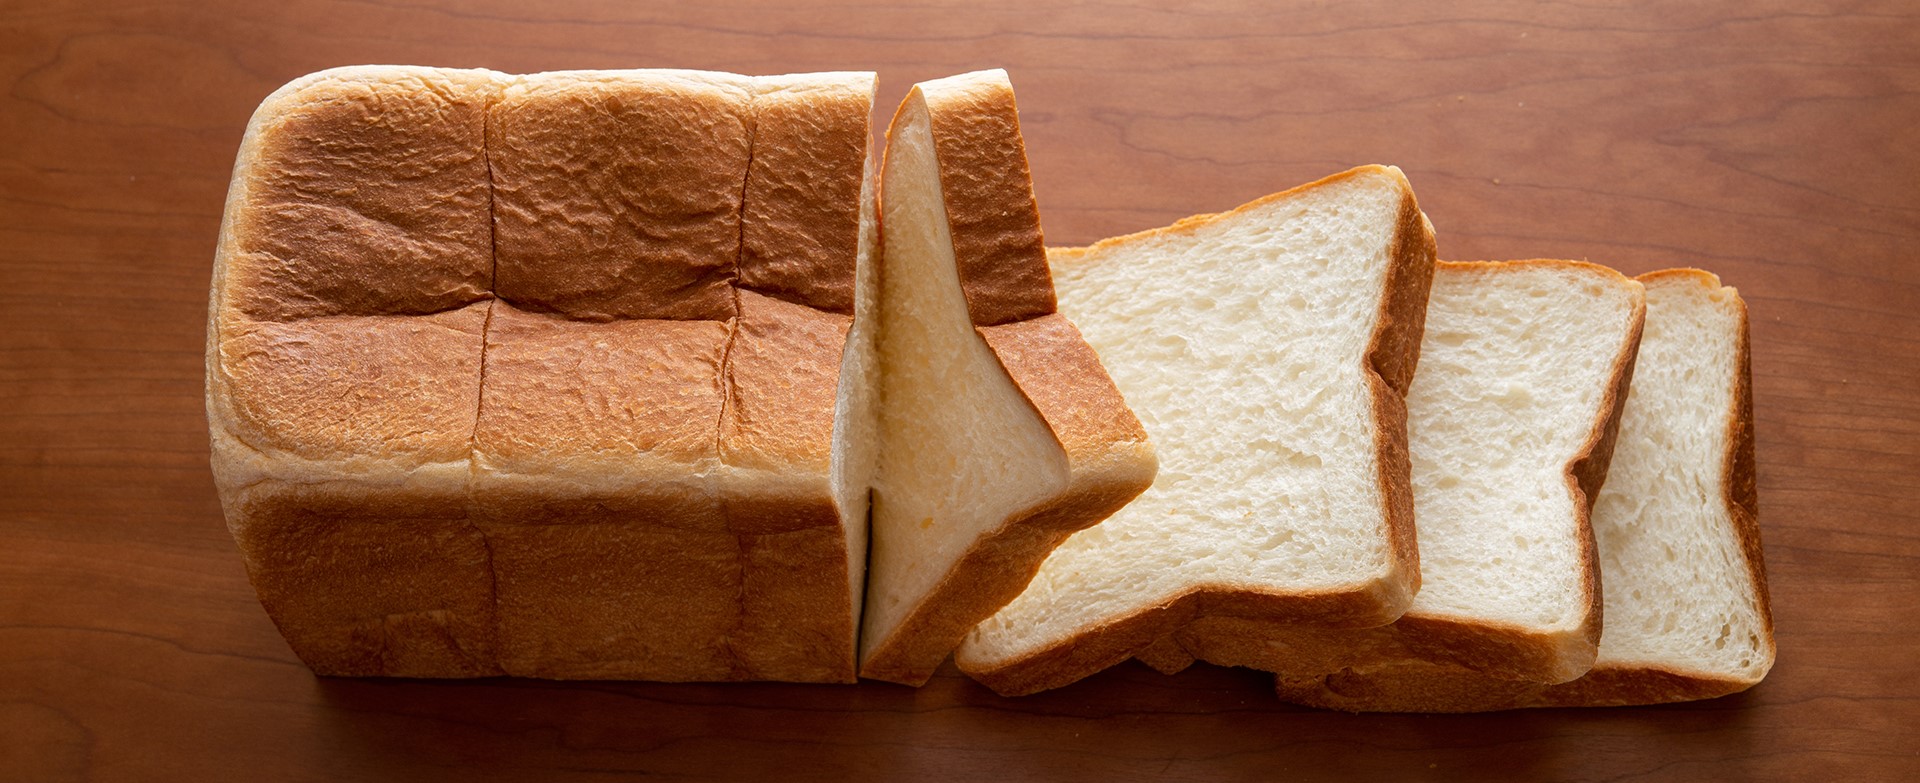 テーブルの上に並べられた食パンの画像